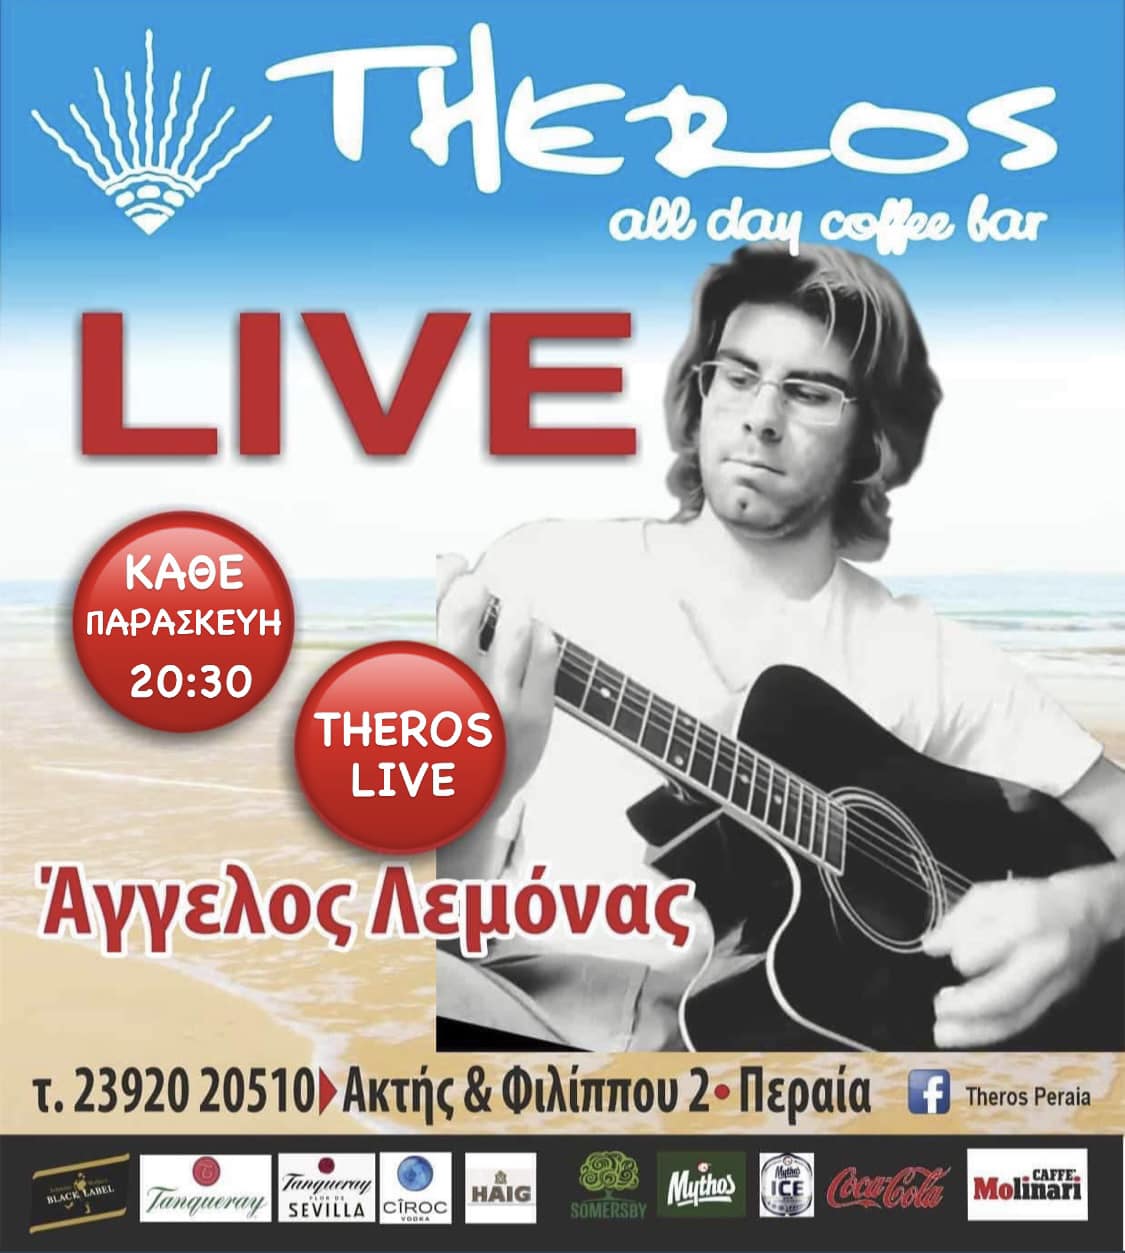 Το live της Παρασκευής στο Theros: Ο Αγγελος Λεμόνας συνεχίζει να γοητεύει με τη μουσική και τα τραγούδια του